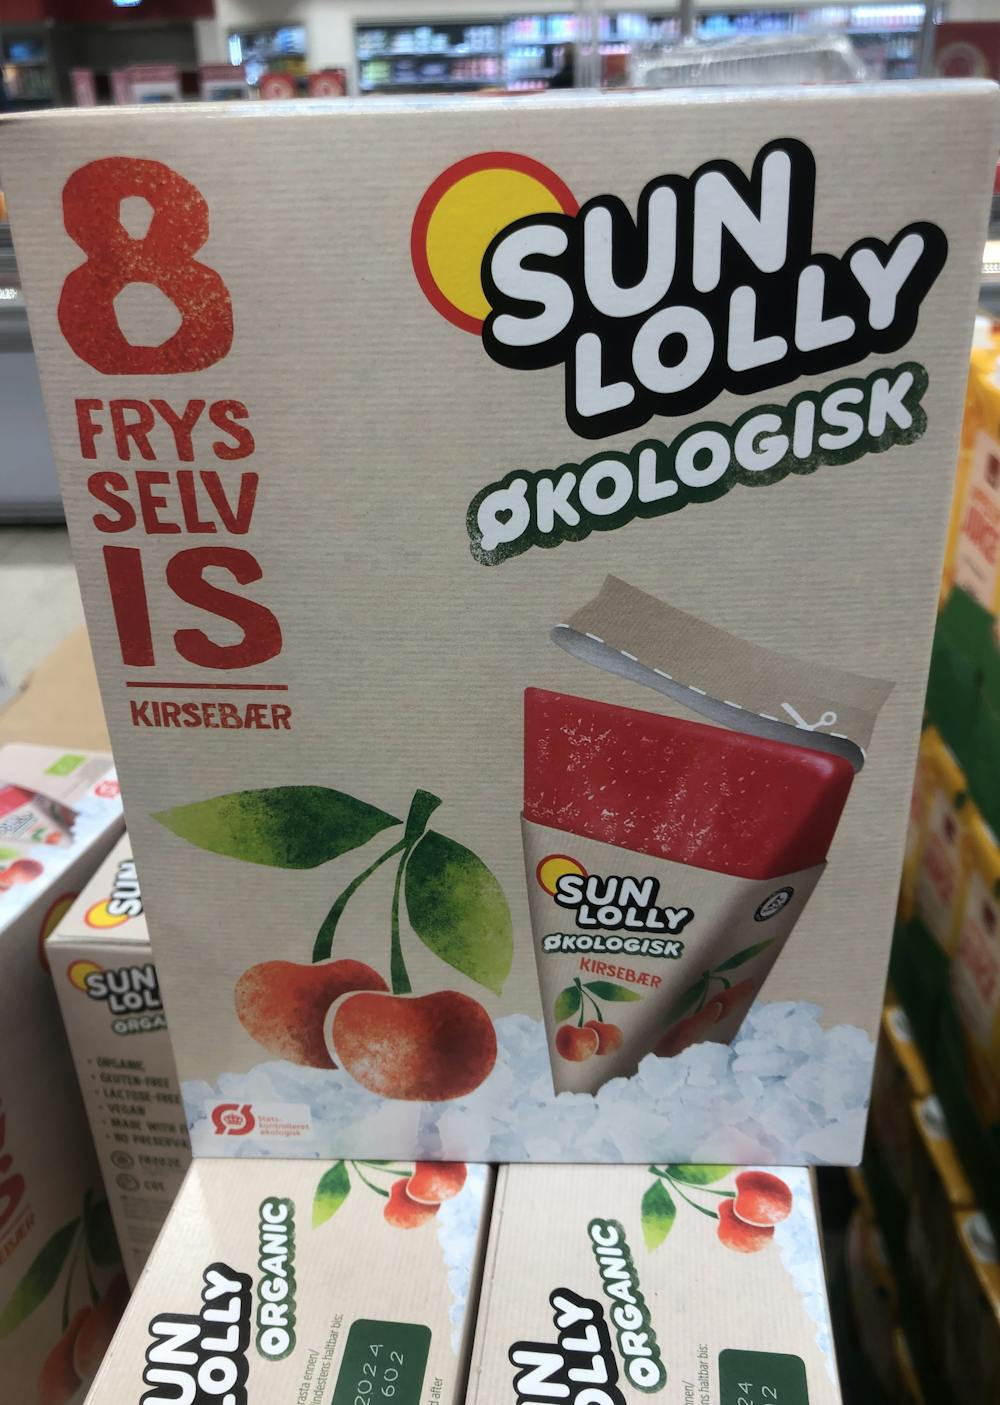 Sun lolly kirsebær , Sun lolly